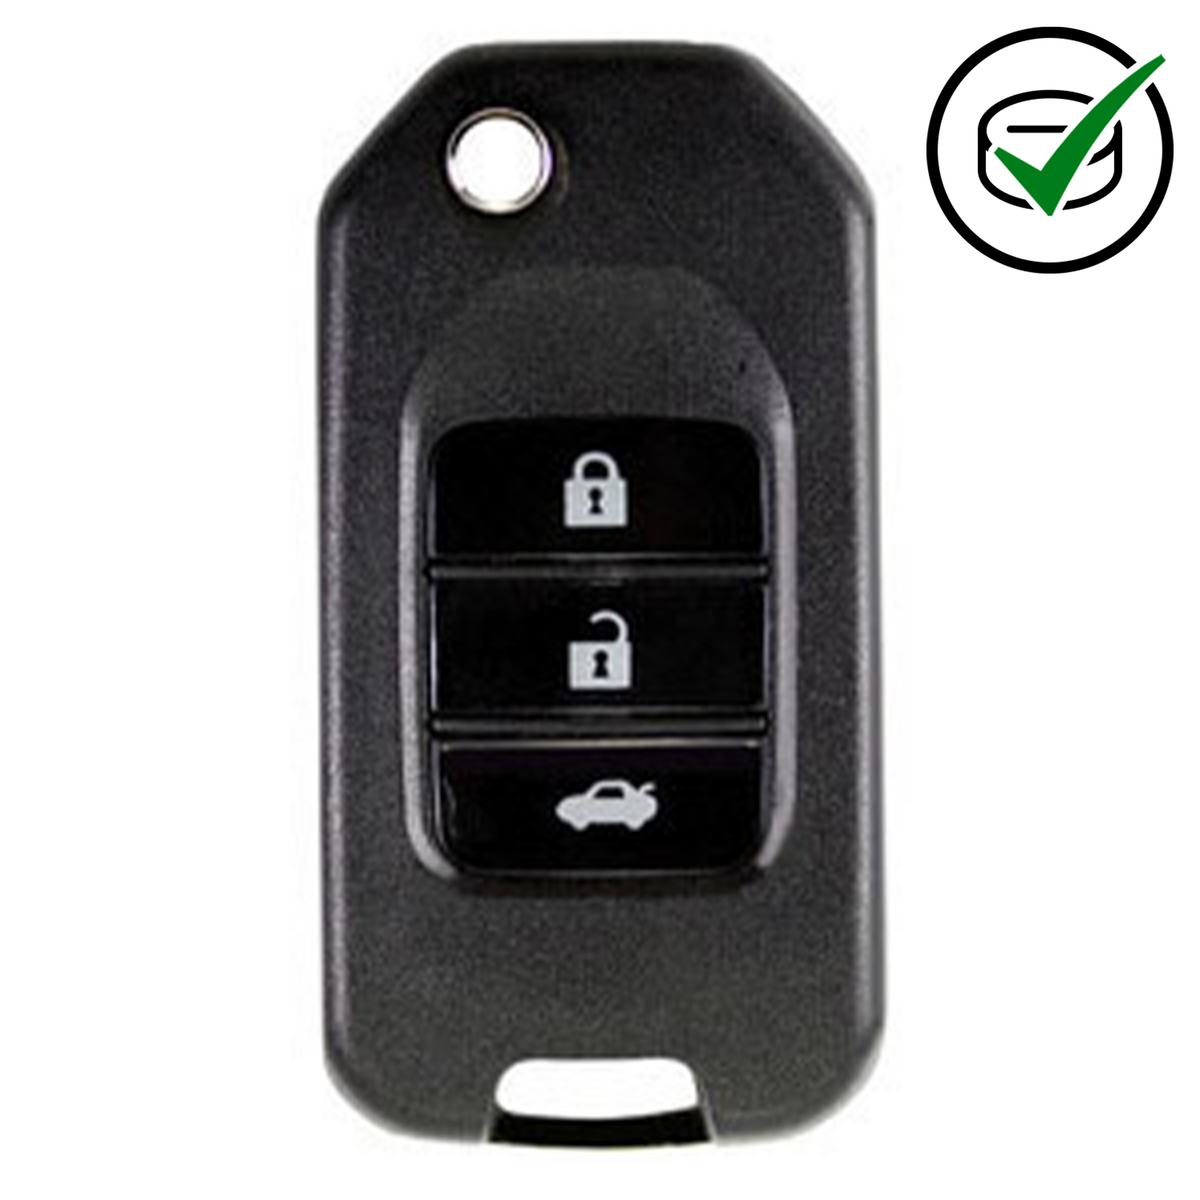 KD 900 Key remote 3 button Honda Style